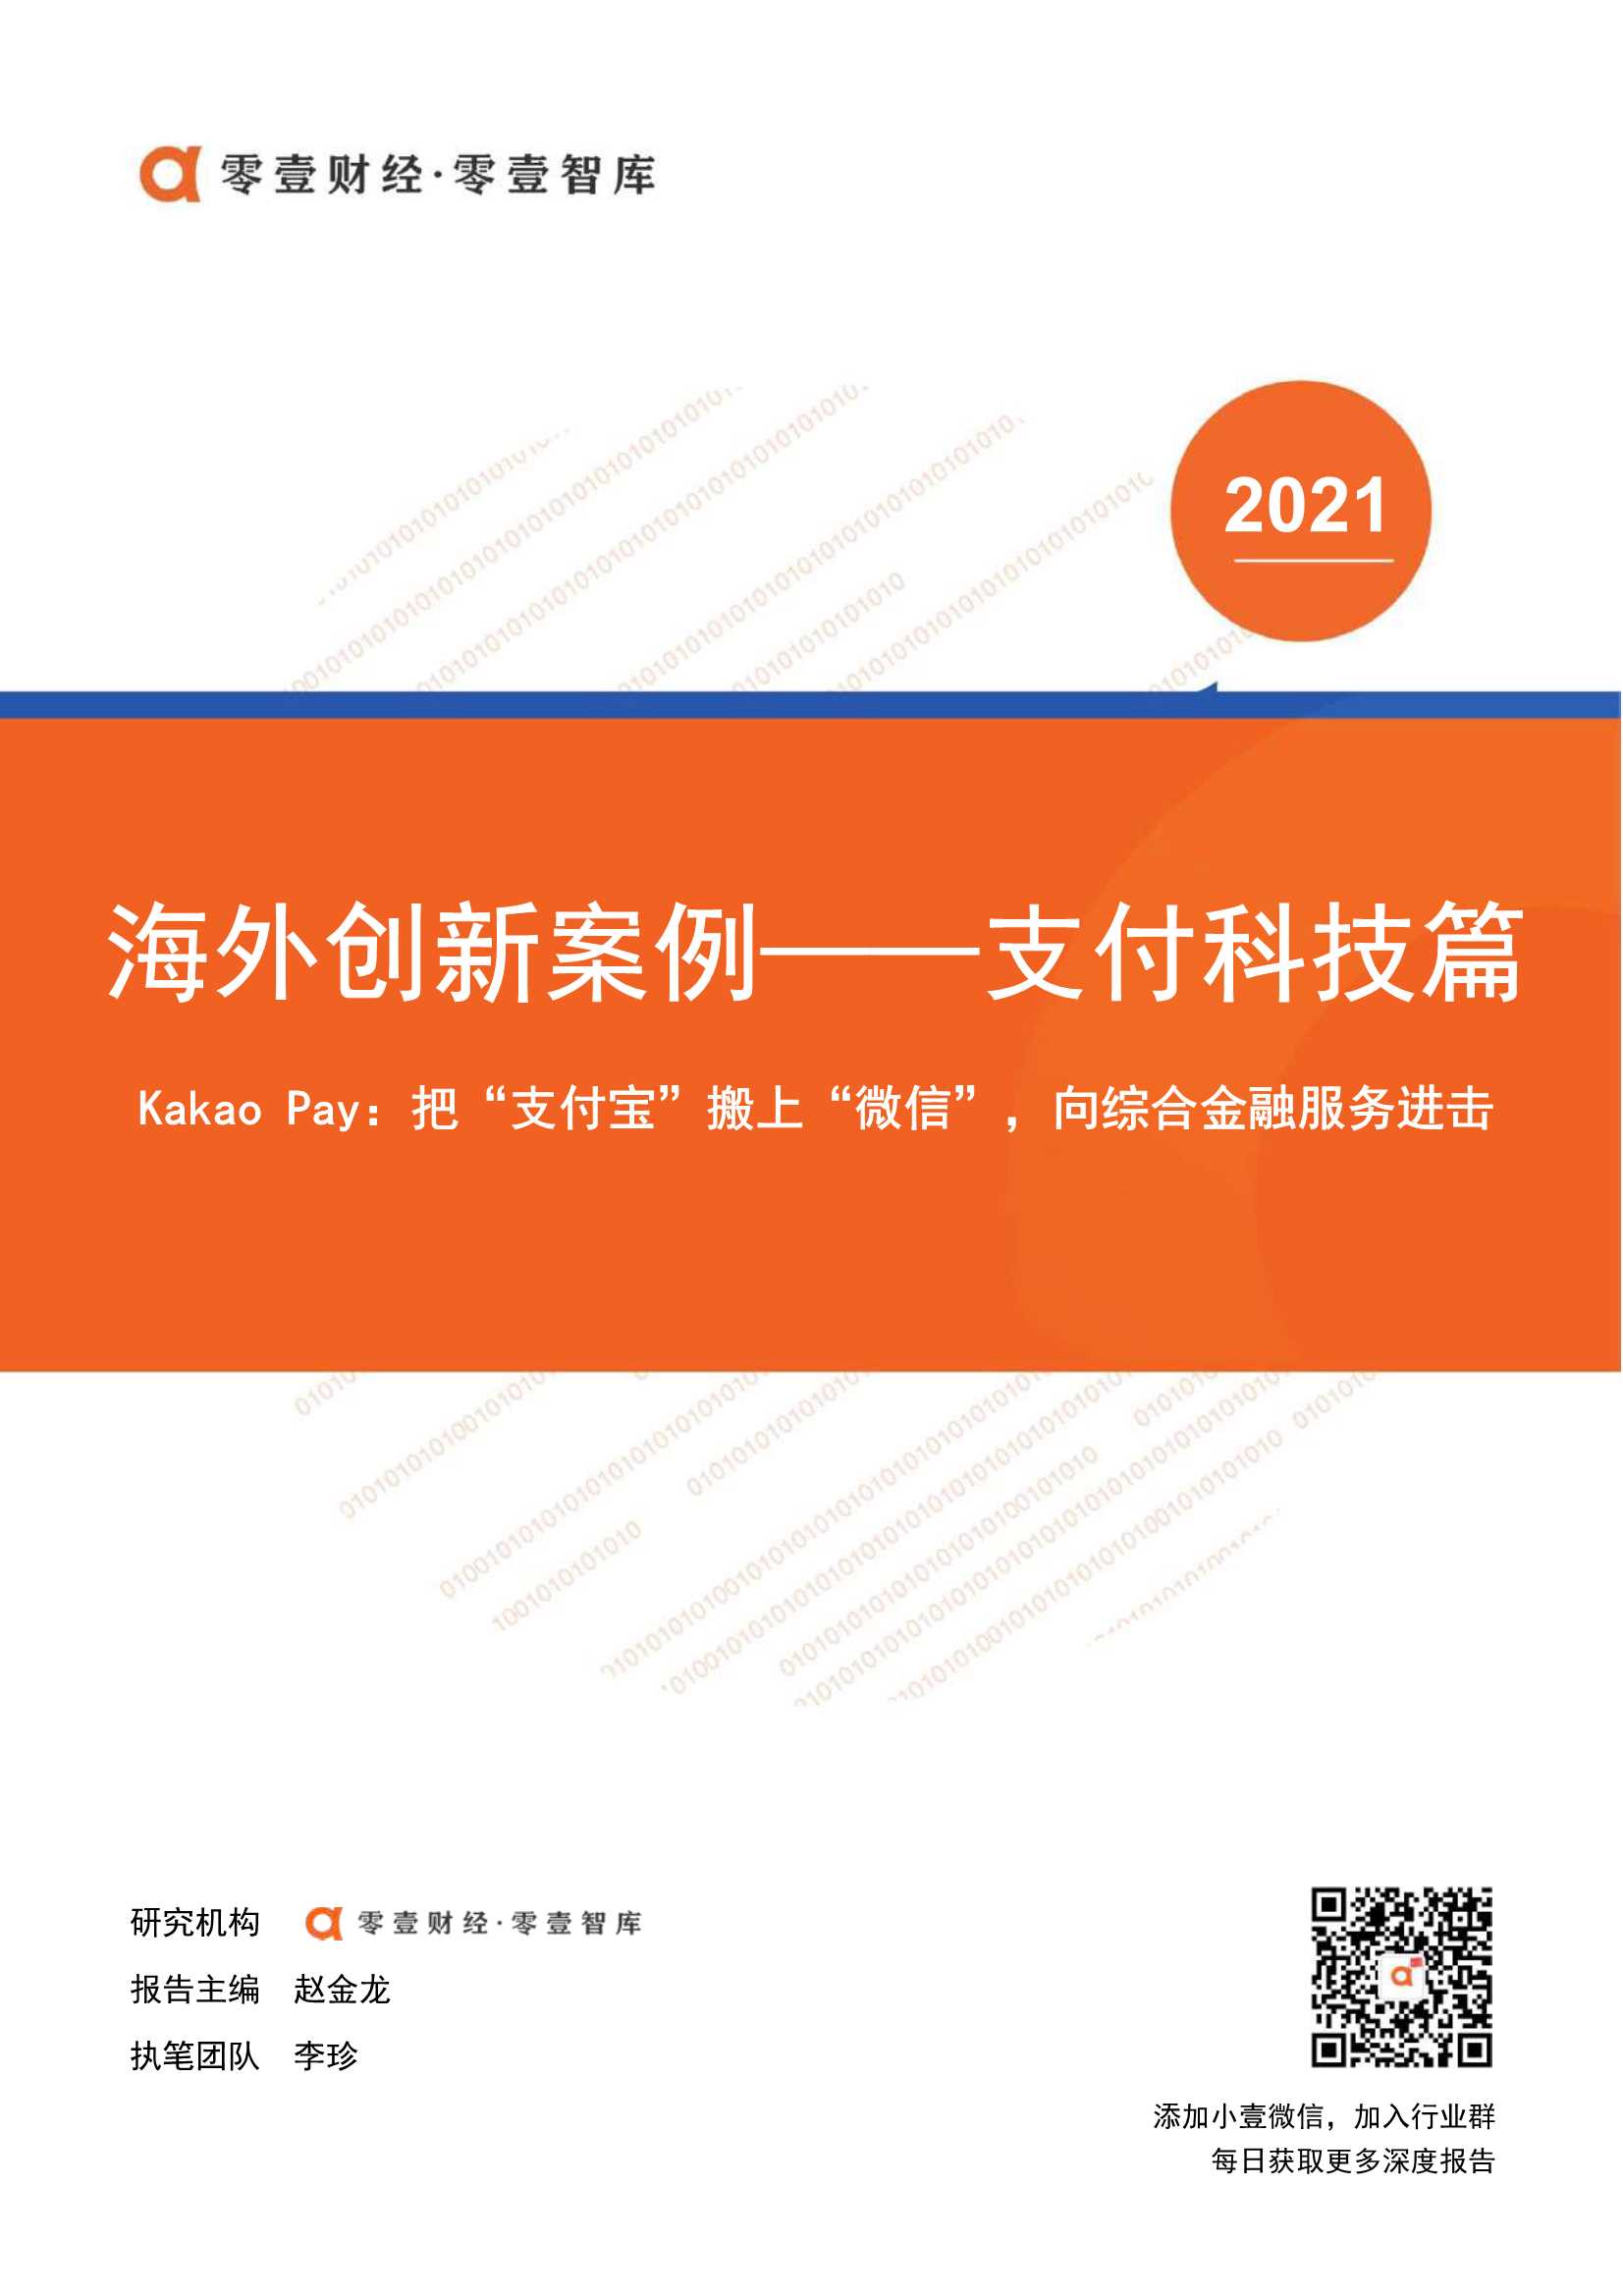 零壹智库-海外创新案例 Kakao Pay：把“支付宝”搬上“微信”，向综合金融服务进击-2021.12-8页